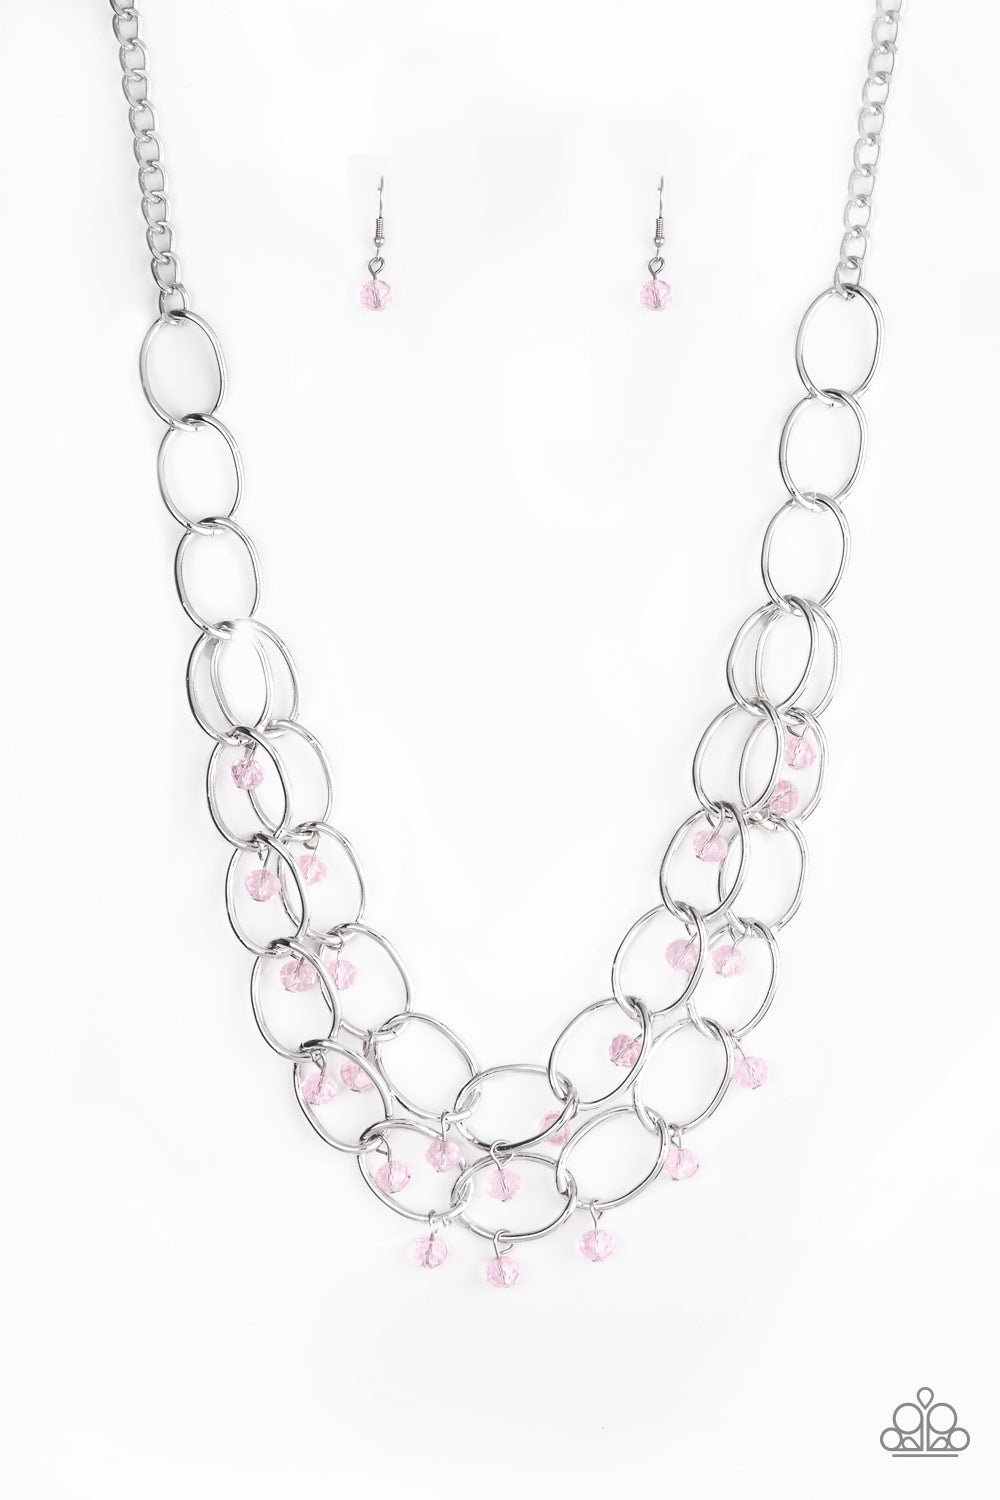 Yacht Tour Pink Paparazzi Necklaces Cashmere Pink Jewels - Cashmere Pink Jewels & Accessories, Cashmere Pink Jewels & Accessories - Paparazzi